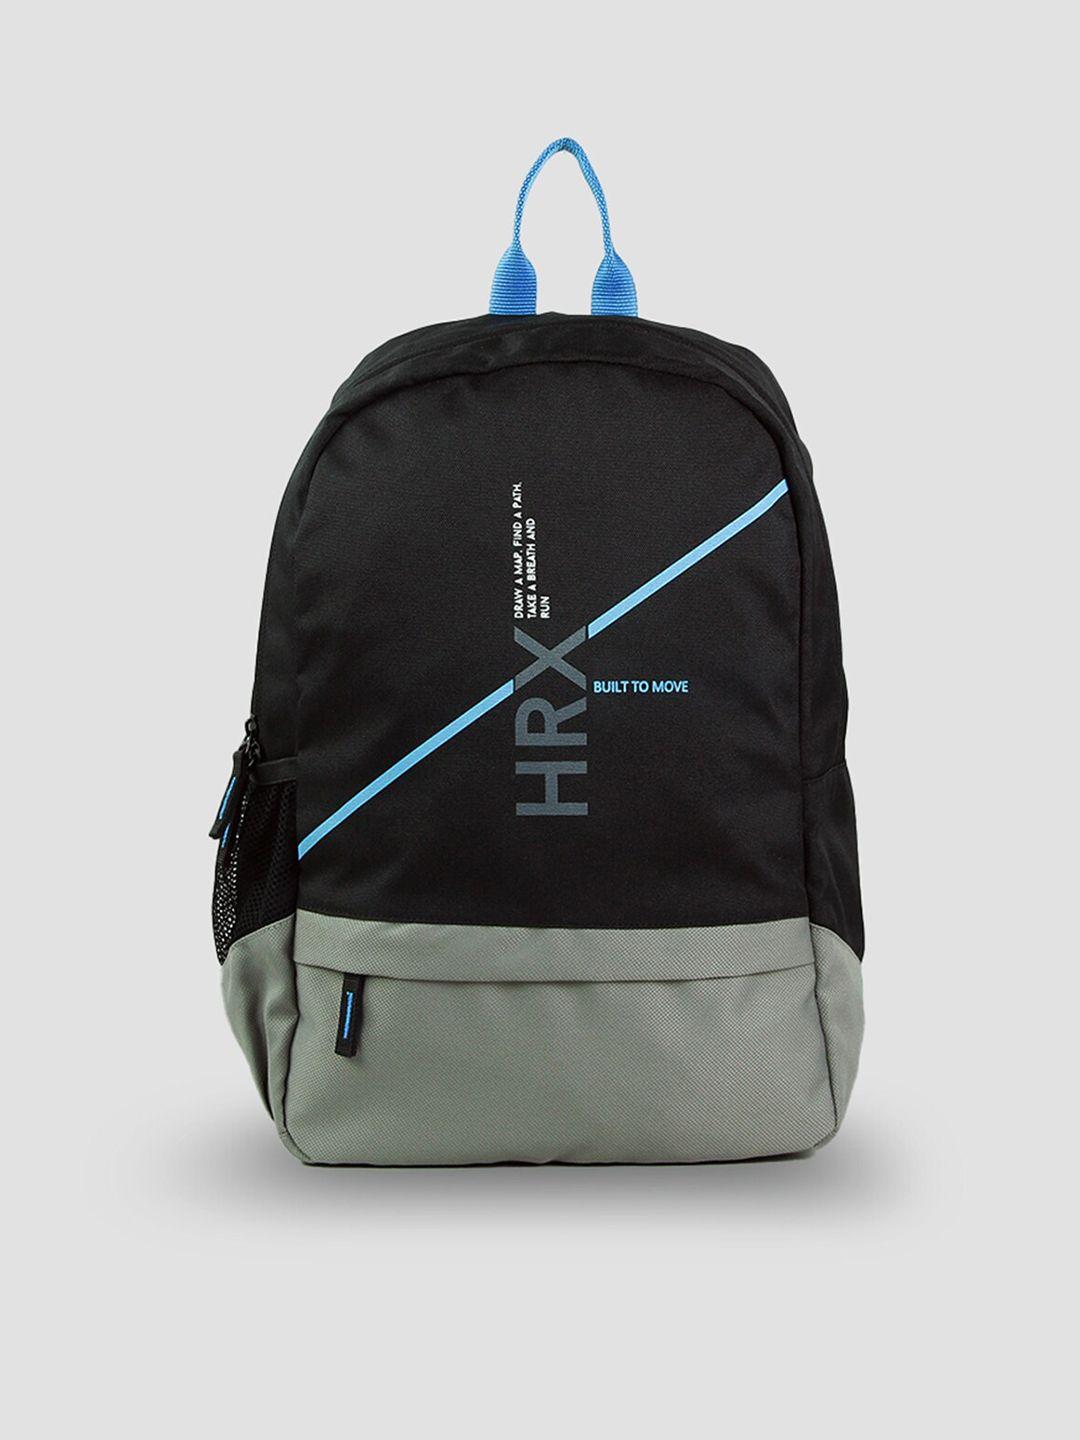 hrx-by-hrithik-roshan-colourblocked-backpack